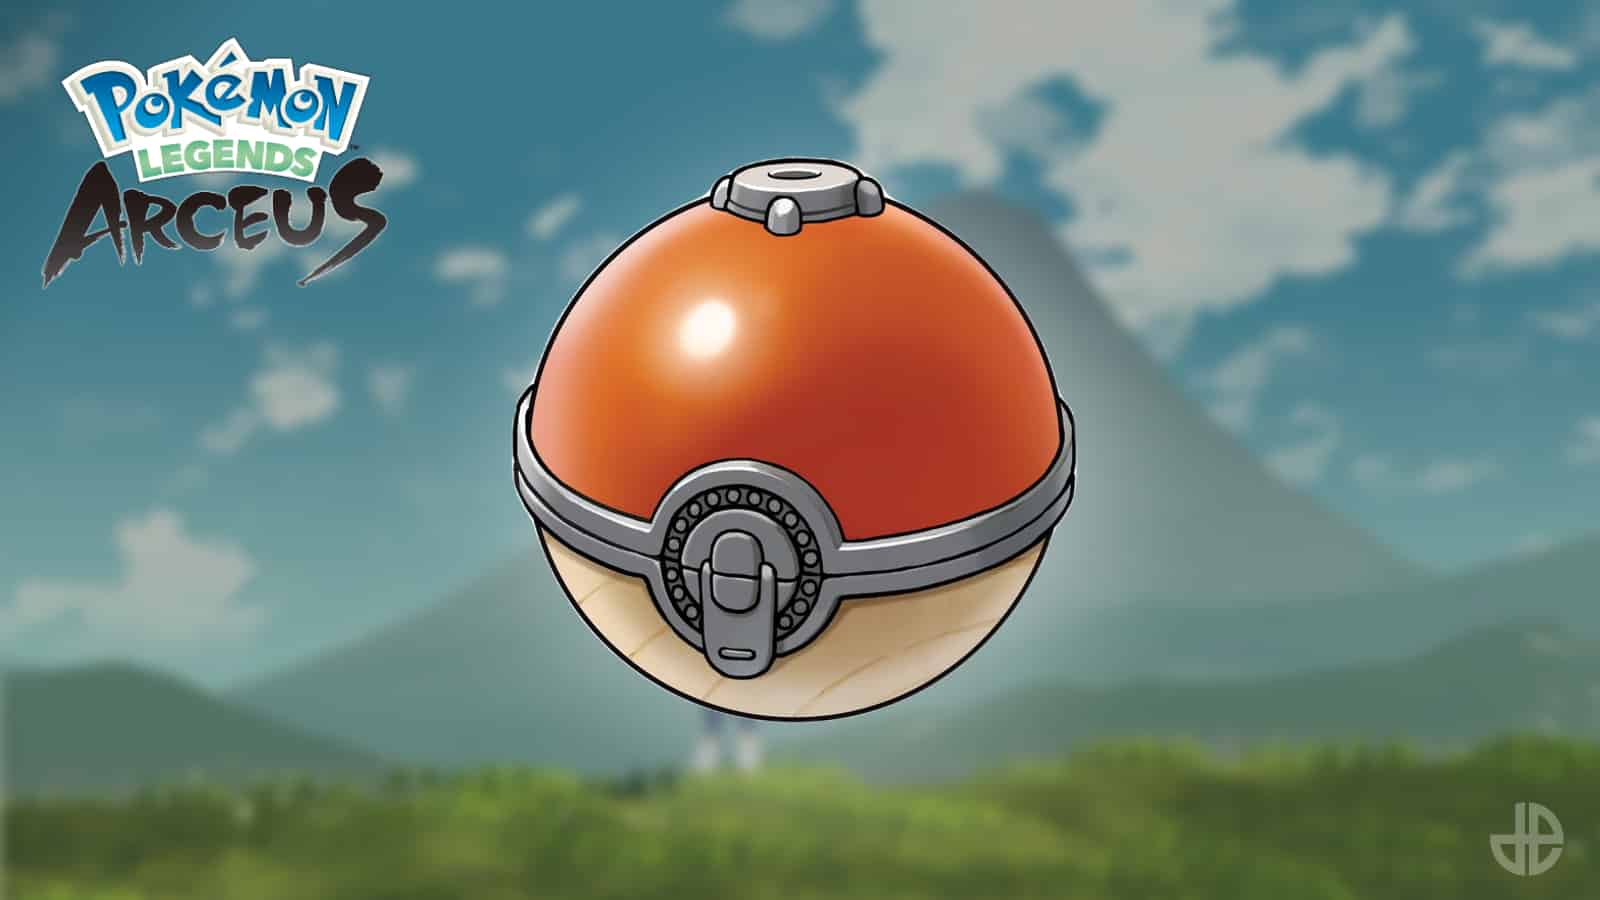 Pokemon pokey balls